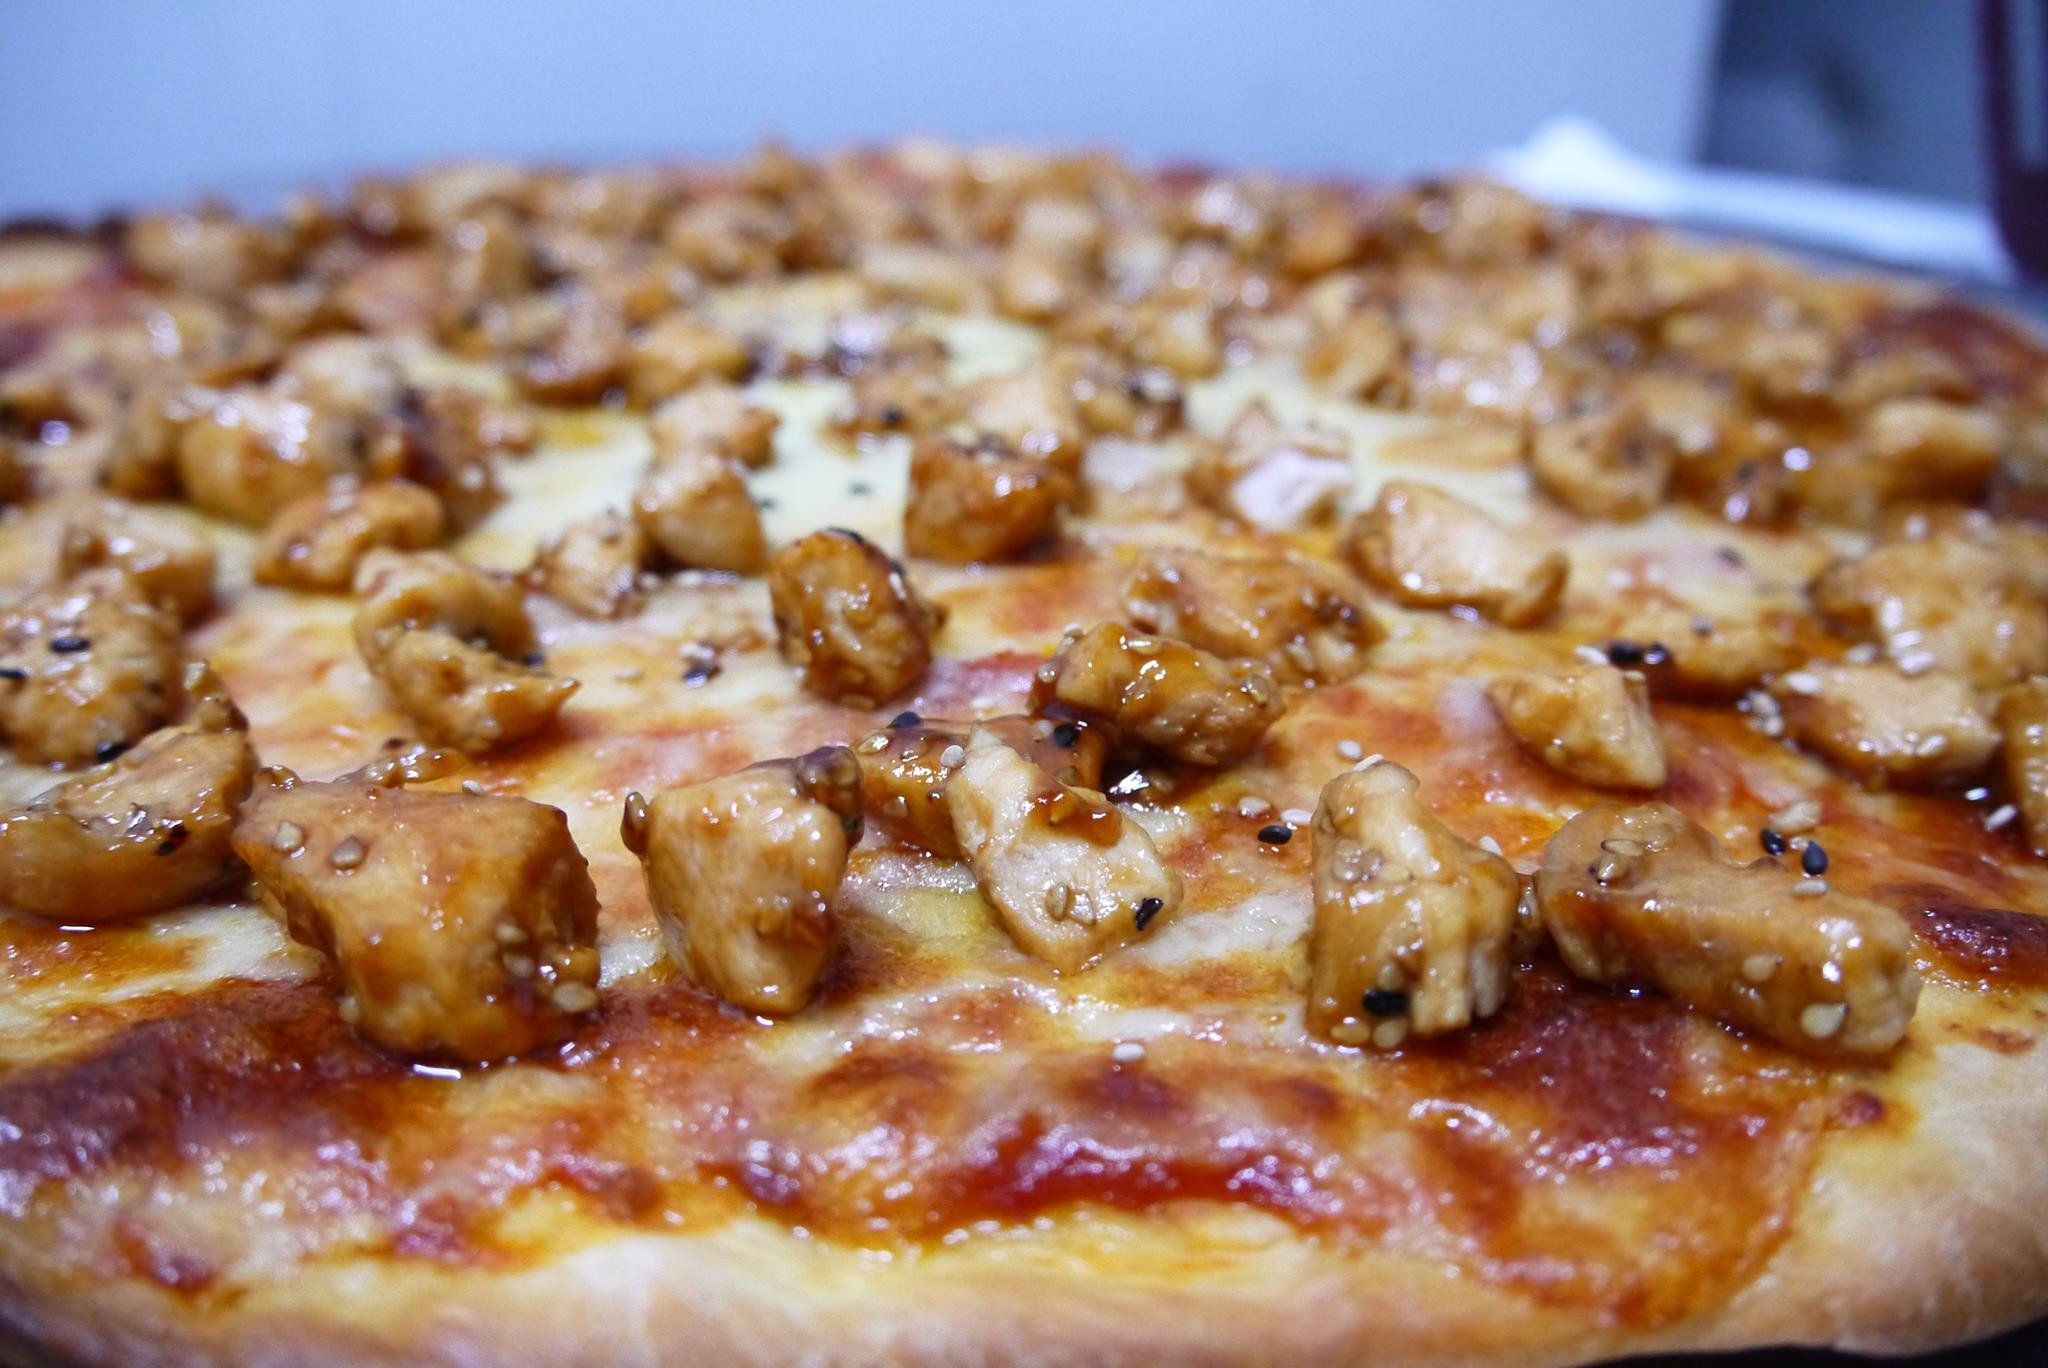 General 2048x1368 food pizza closeup blurred